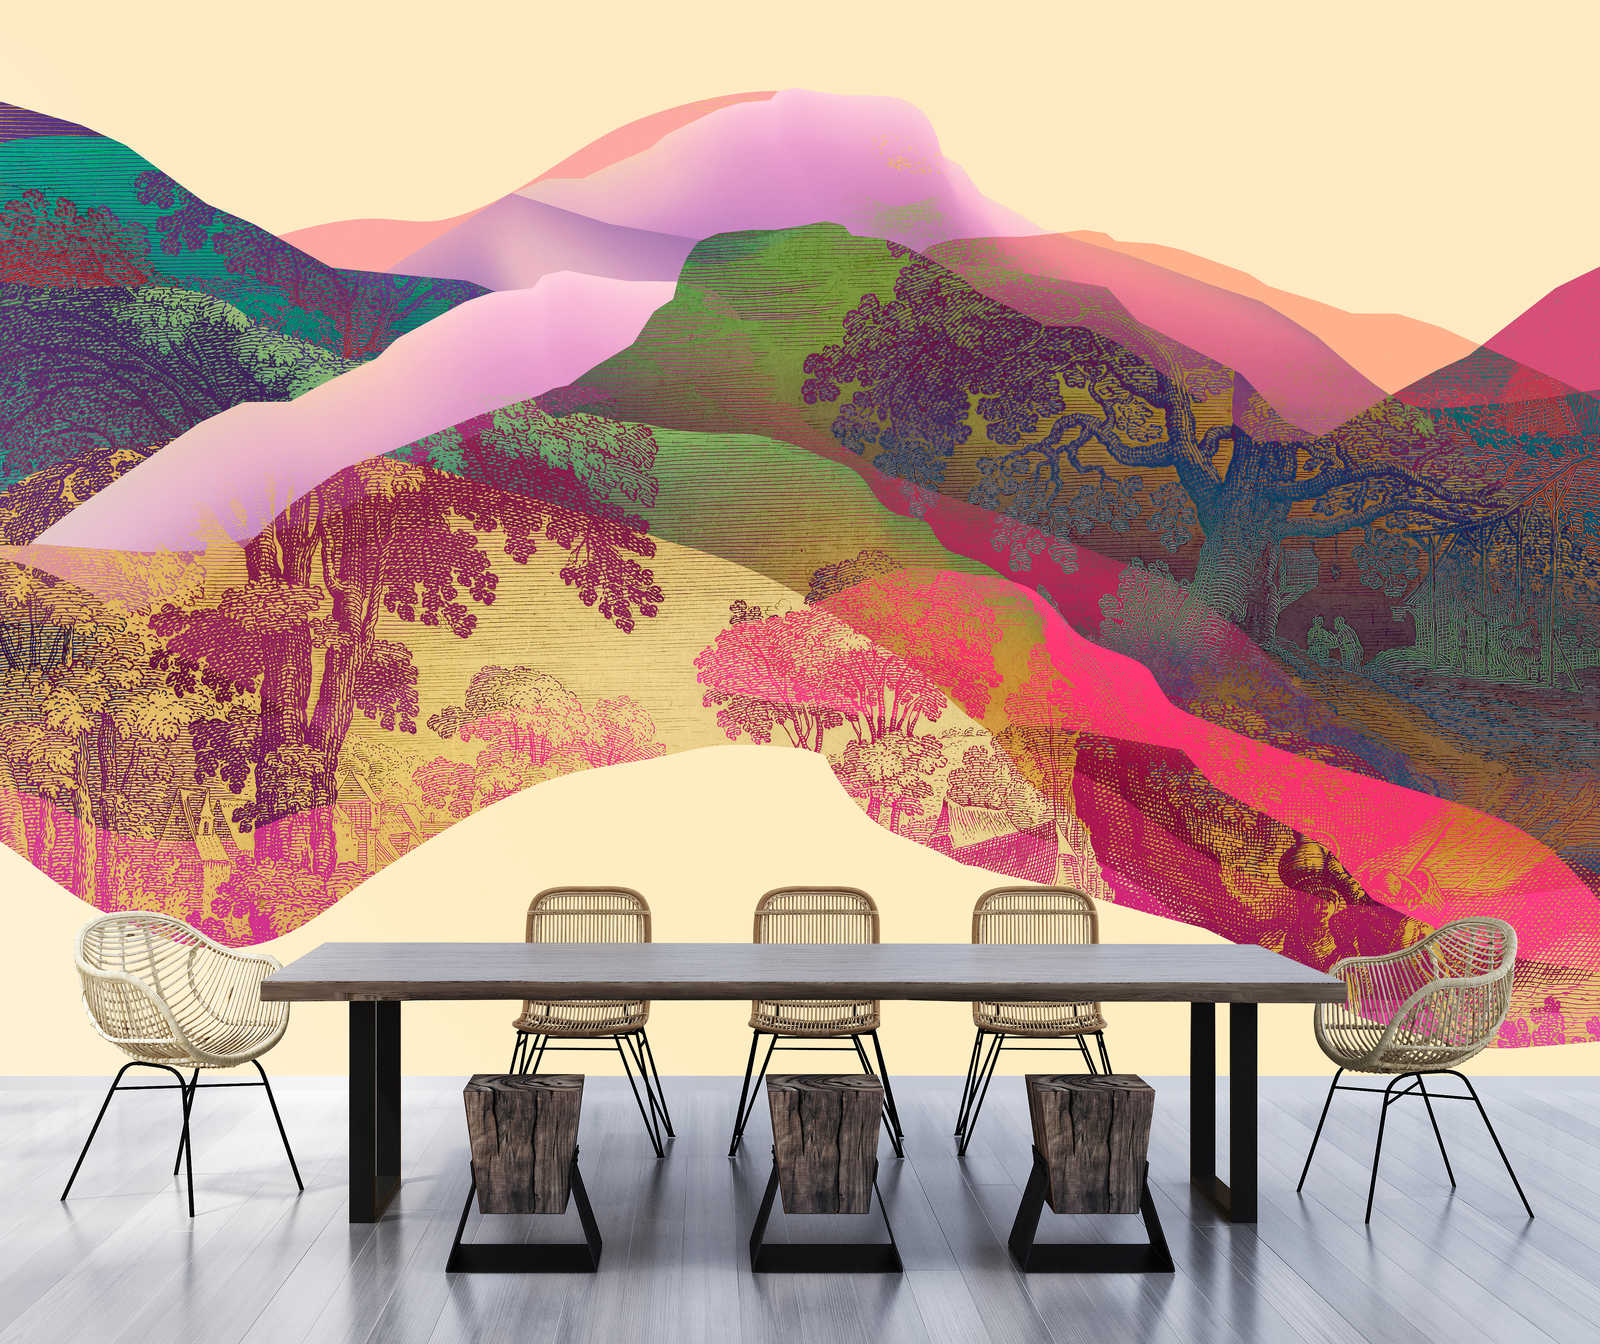             Magic Mountain 2 - Muurschildering berglandschap abstract
        